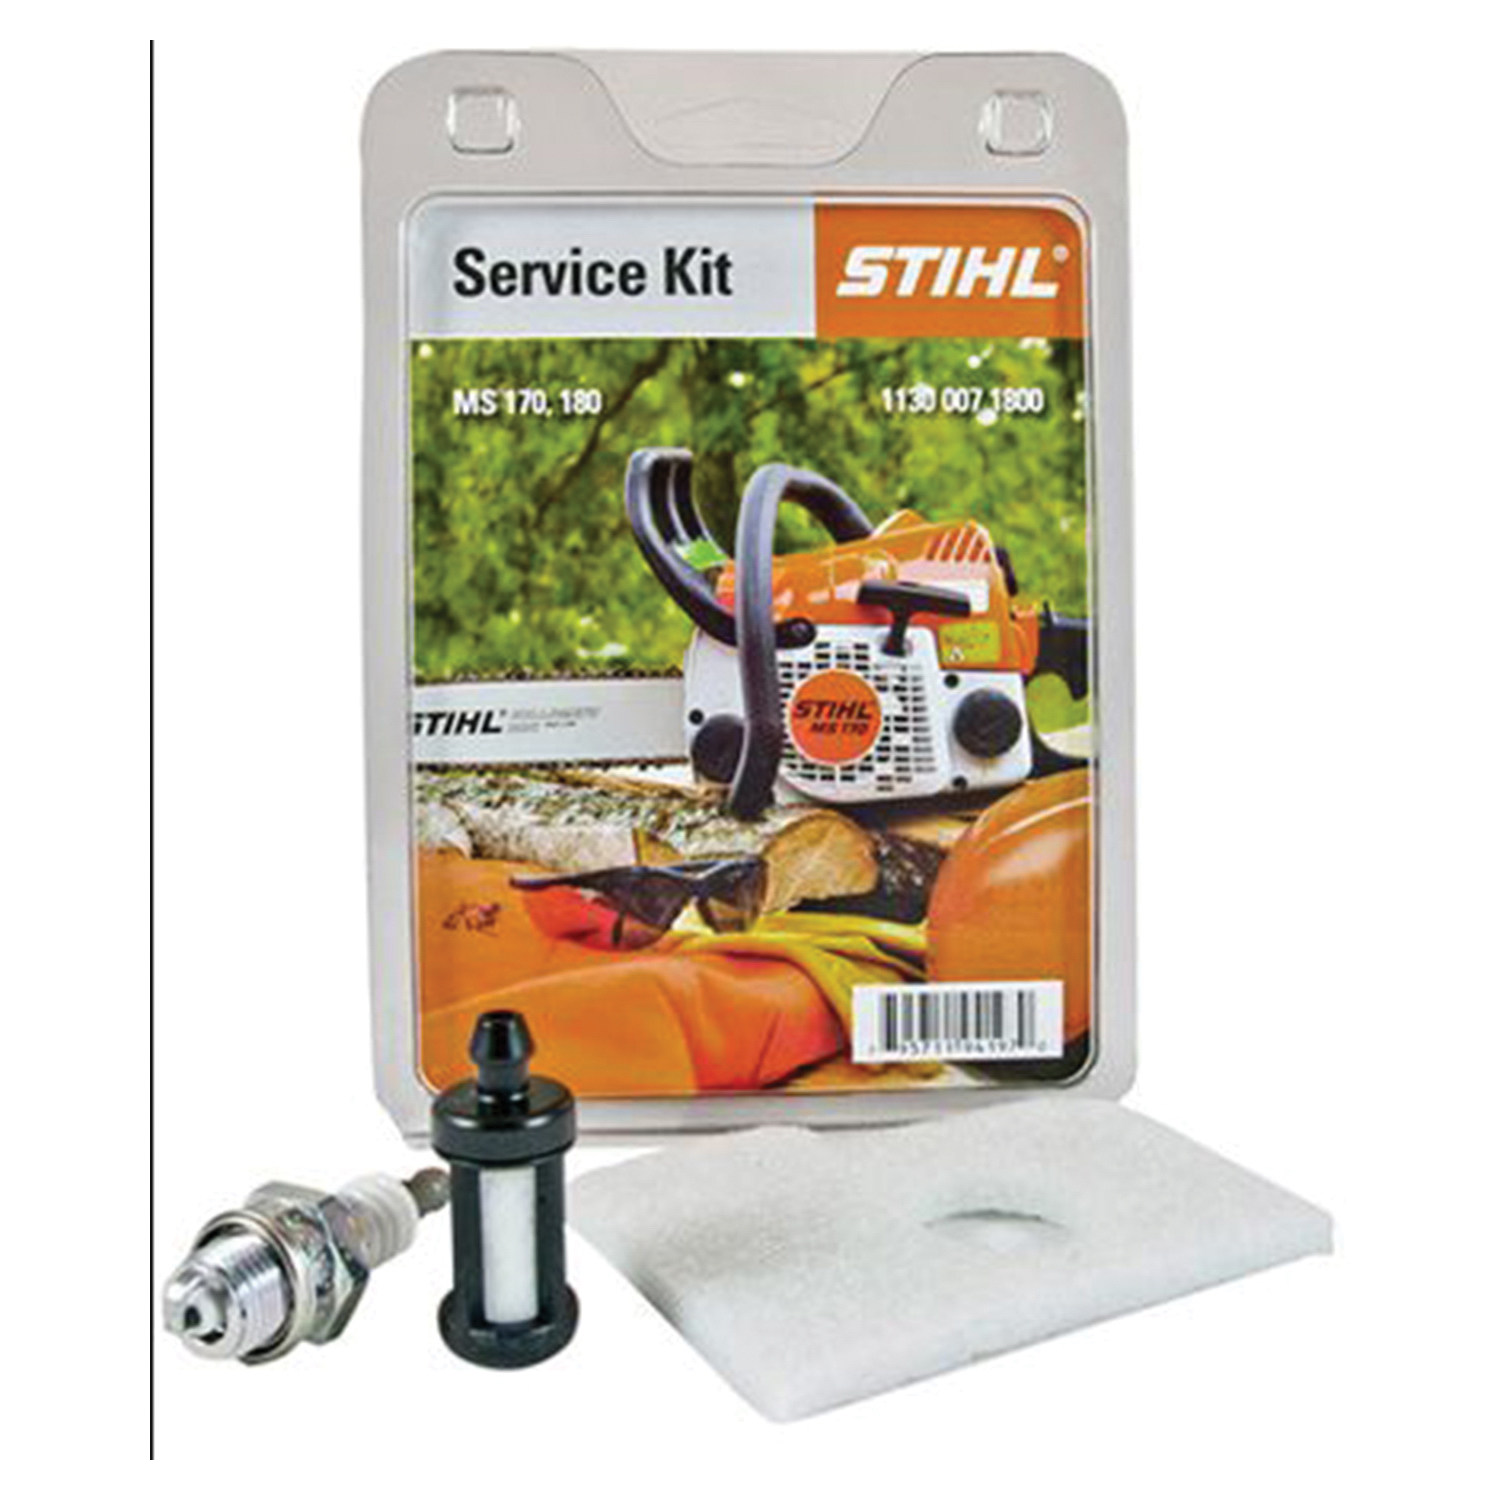 Набор штиль. Сервисный набор для Stihl MS 170, 180. Сервисный набор Stihl MS170.180 1130-007-4102. Stihl MS 170. Service Kit Stihl.